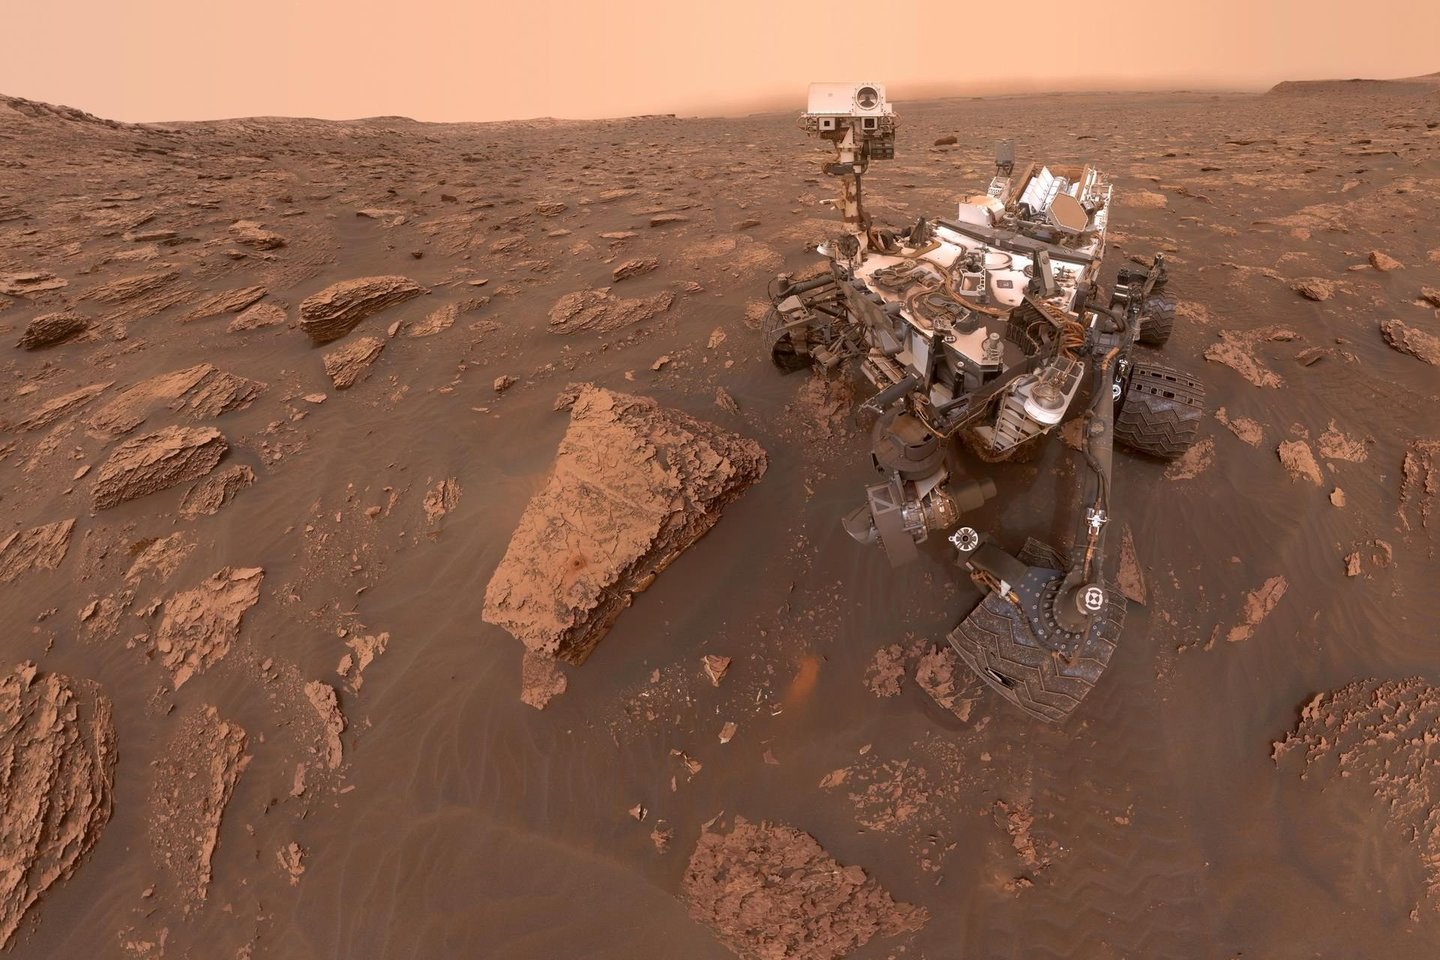  Ieškodamas gyvybės už Žemės ribų, NASA marsaeigis „Curiosity“ jau beveik dešimtmetį vykdo misiją, kurios tikslas – nustatyti, ar Marsas kada nors buvo tinkama gyvybei vieta.<br> NASA nuotr.